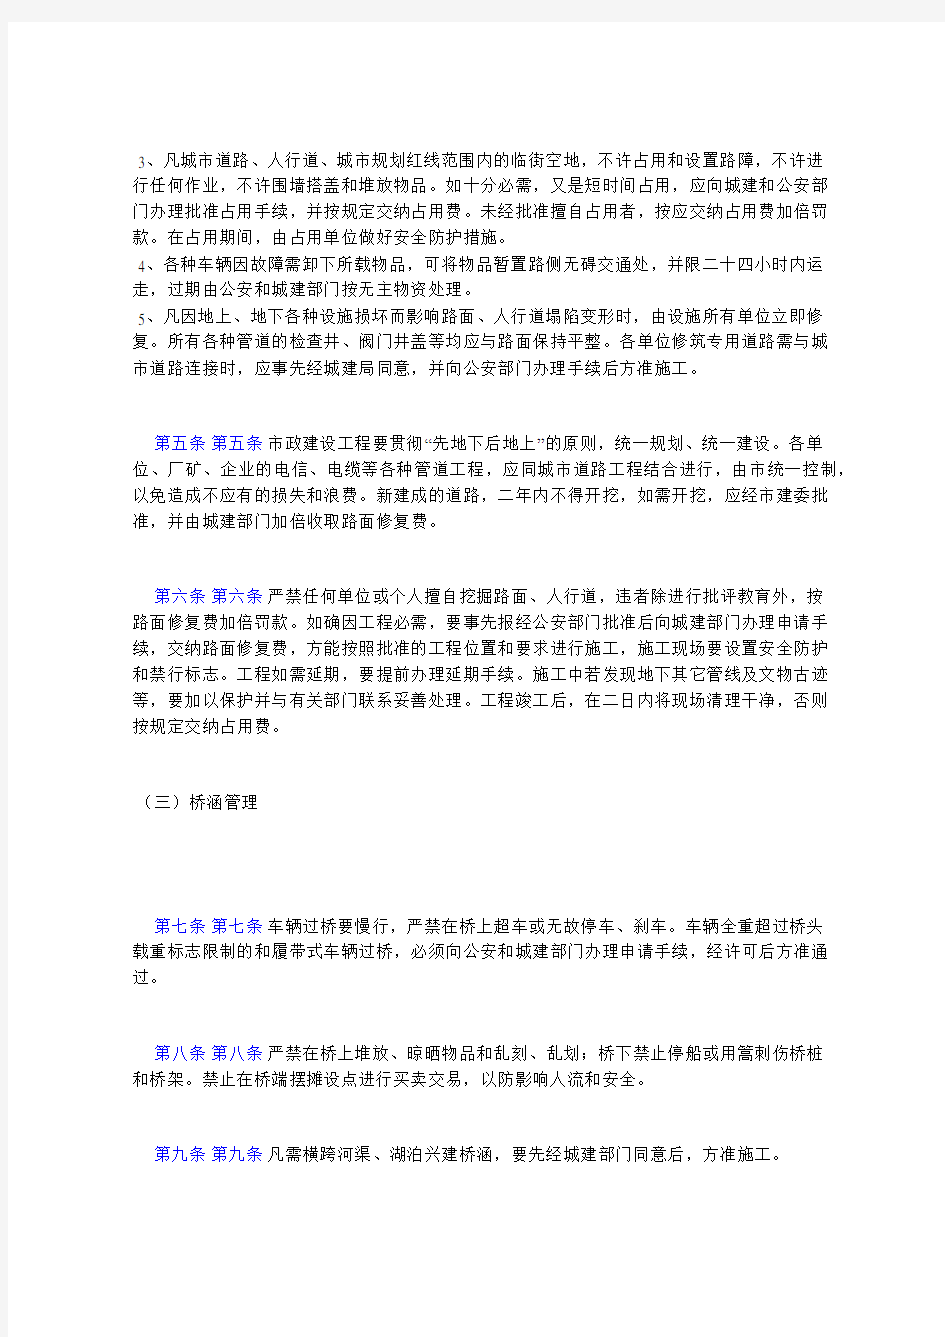 河南省城市市政工程设施管理试行规定